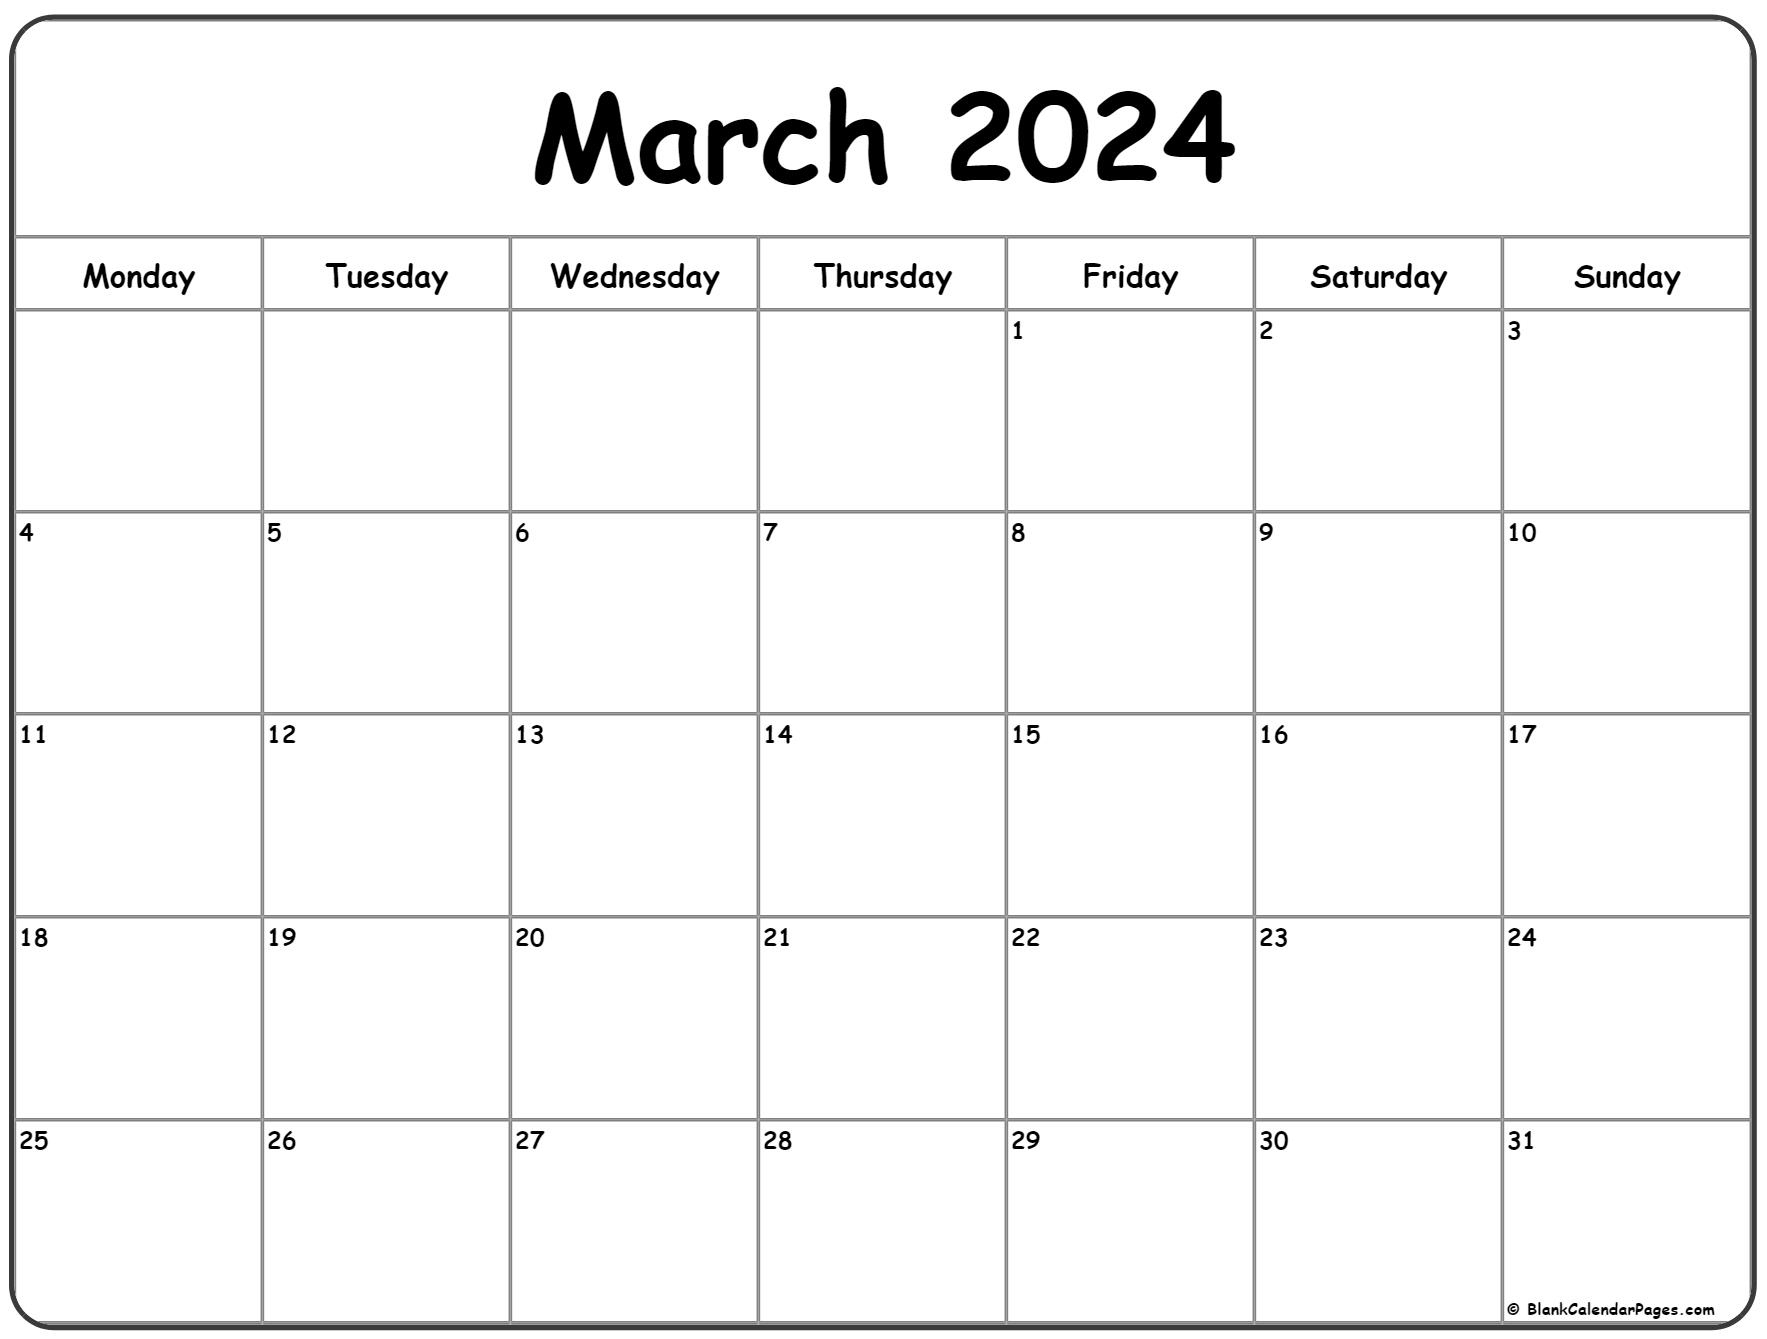 March 2024 Monday Calendar | Monday To Sunday | March 2024 Calendar Printable